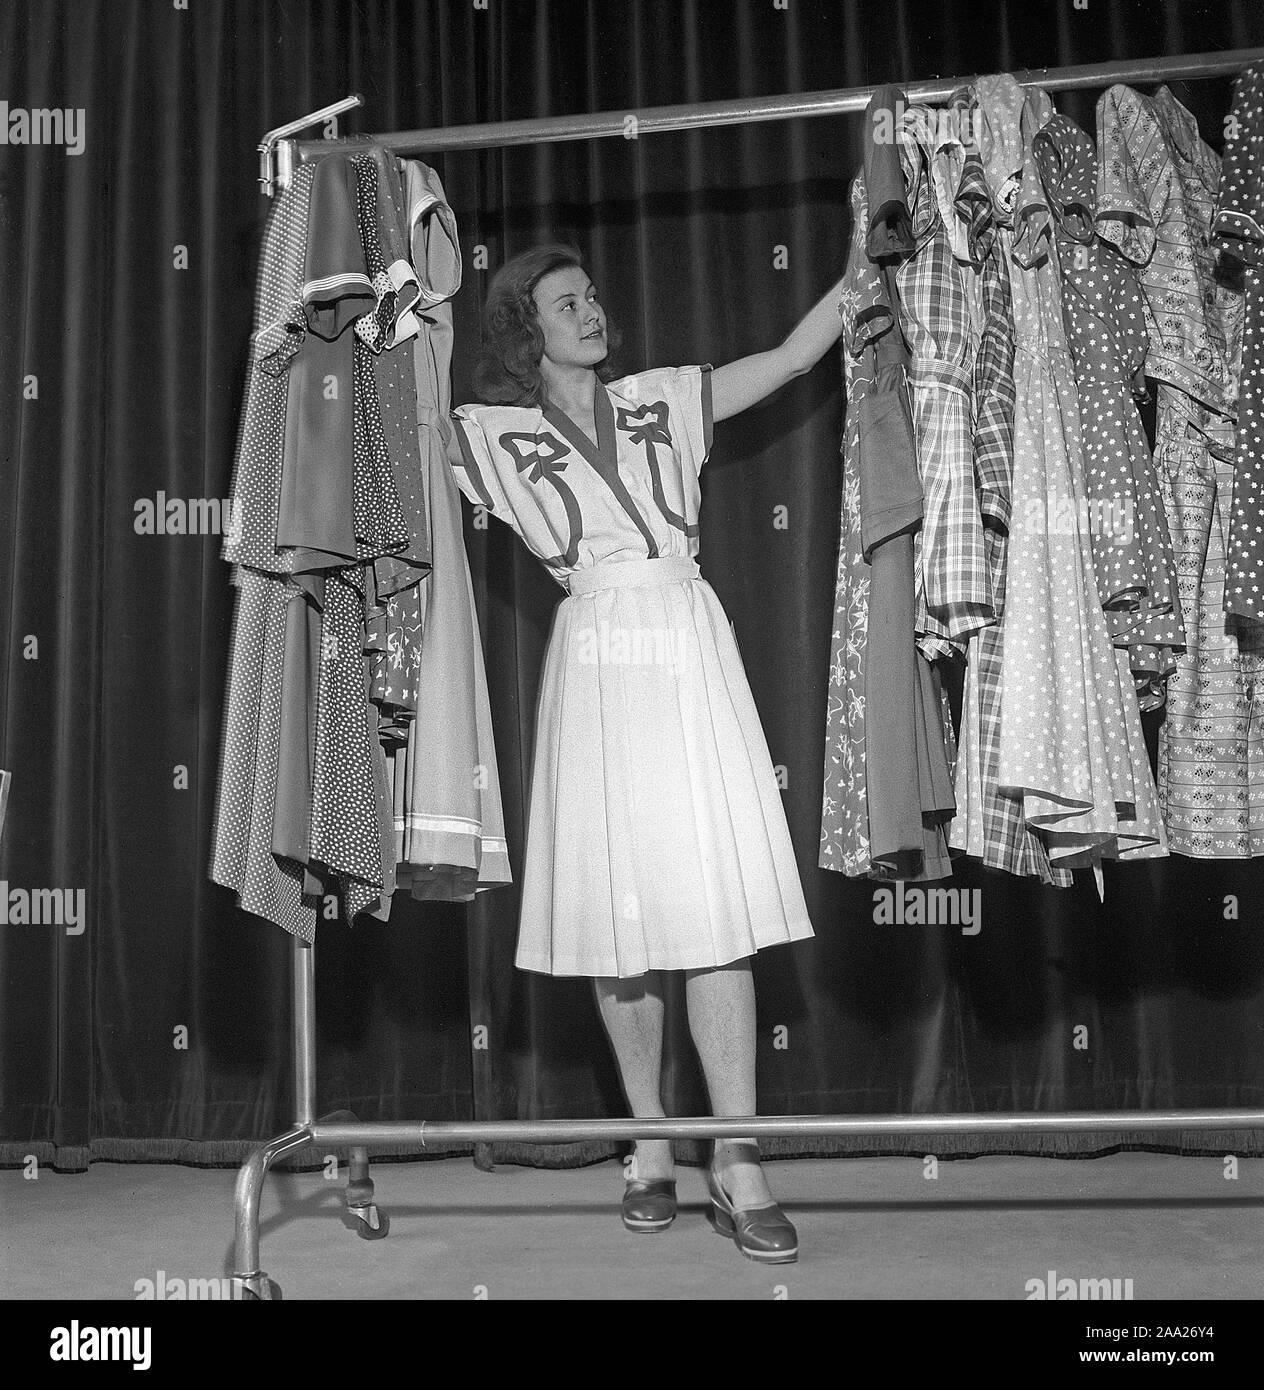 La moda femenina en la década de 1940. Una joven en un traje de 1940 sigue en pie y observar los diferentes vestidos de Suecia 1945 Kristoffersson Ref R129-1 Fotografía